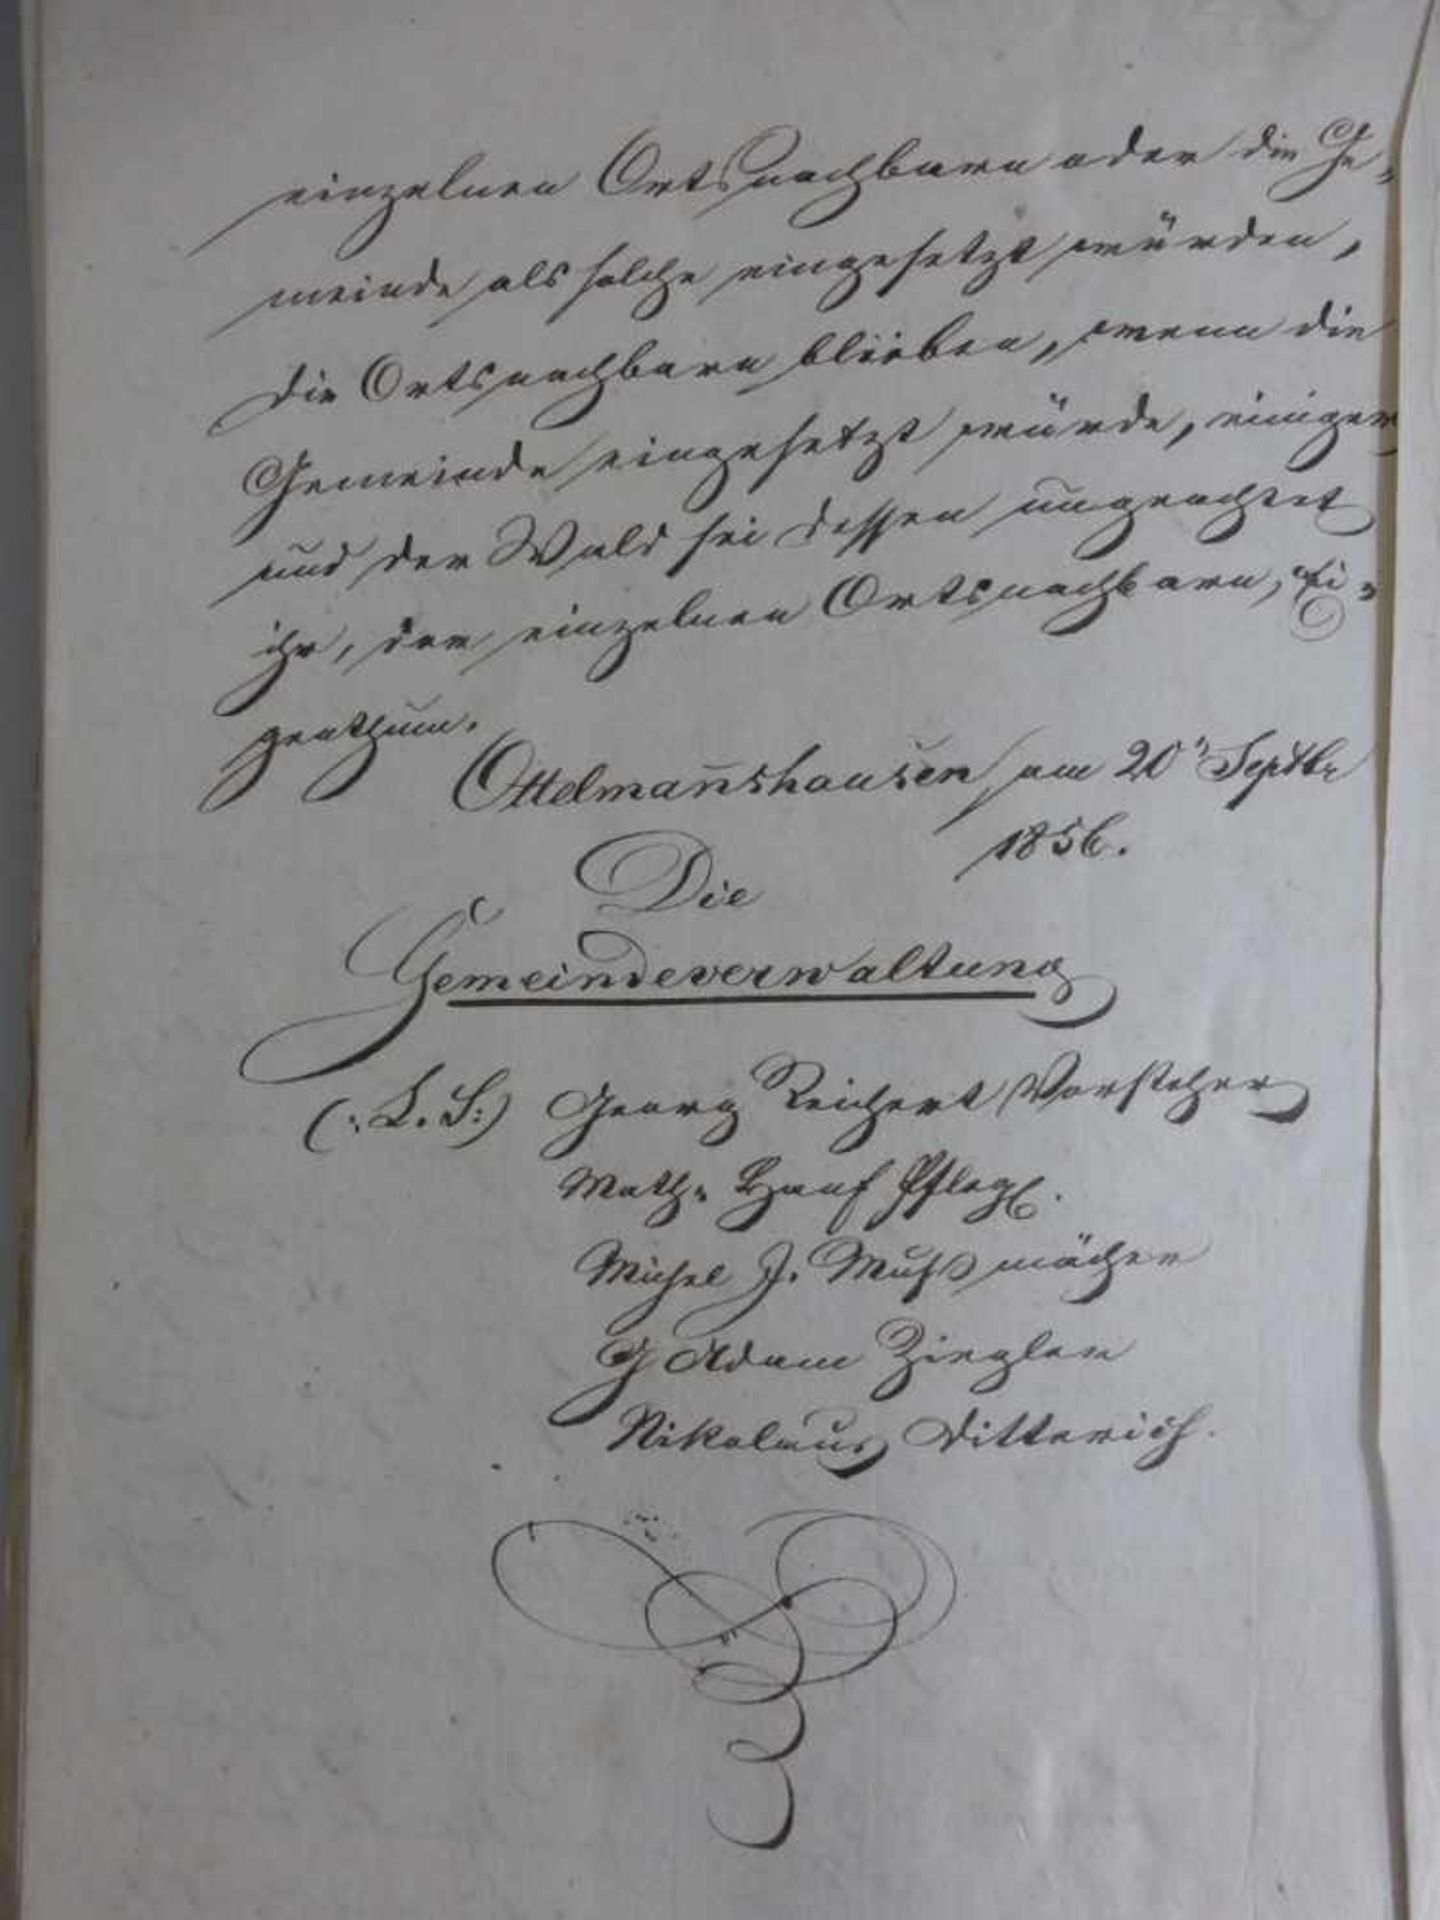 Deutsche Urkunde, dat. 1856, handschriftliche Urkunde, Ottelmannshausen / Herbstadt - - Bild 3 aus 3